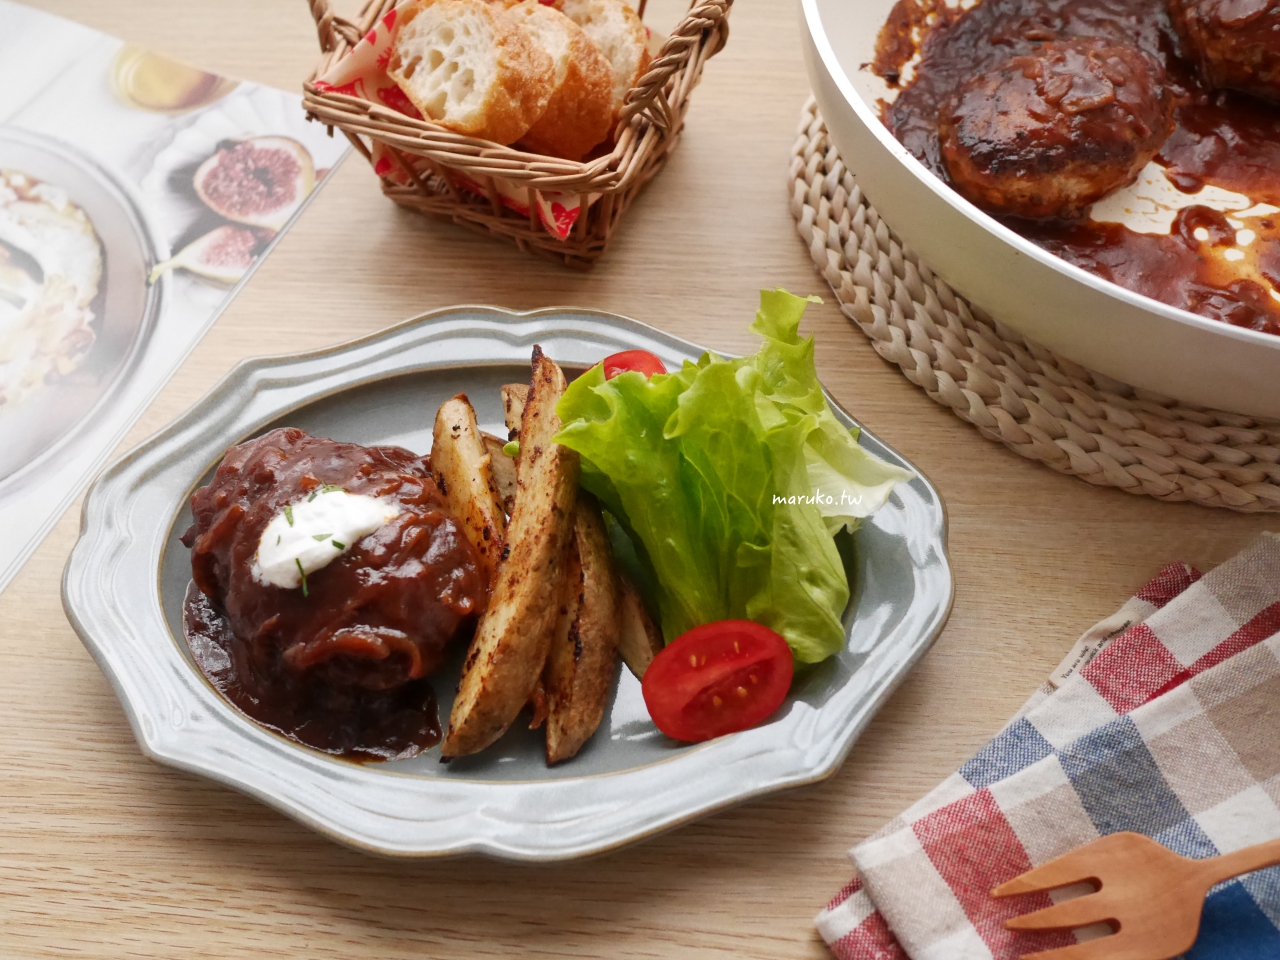 【食譜】日式紅酒漢堡排 日本洋食餐館的漢堡排醬汁做法